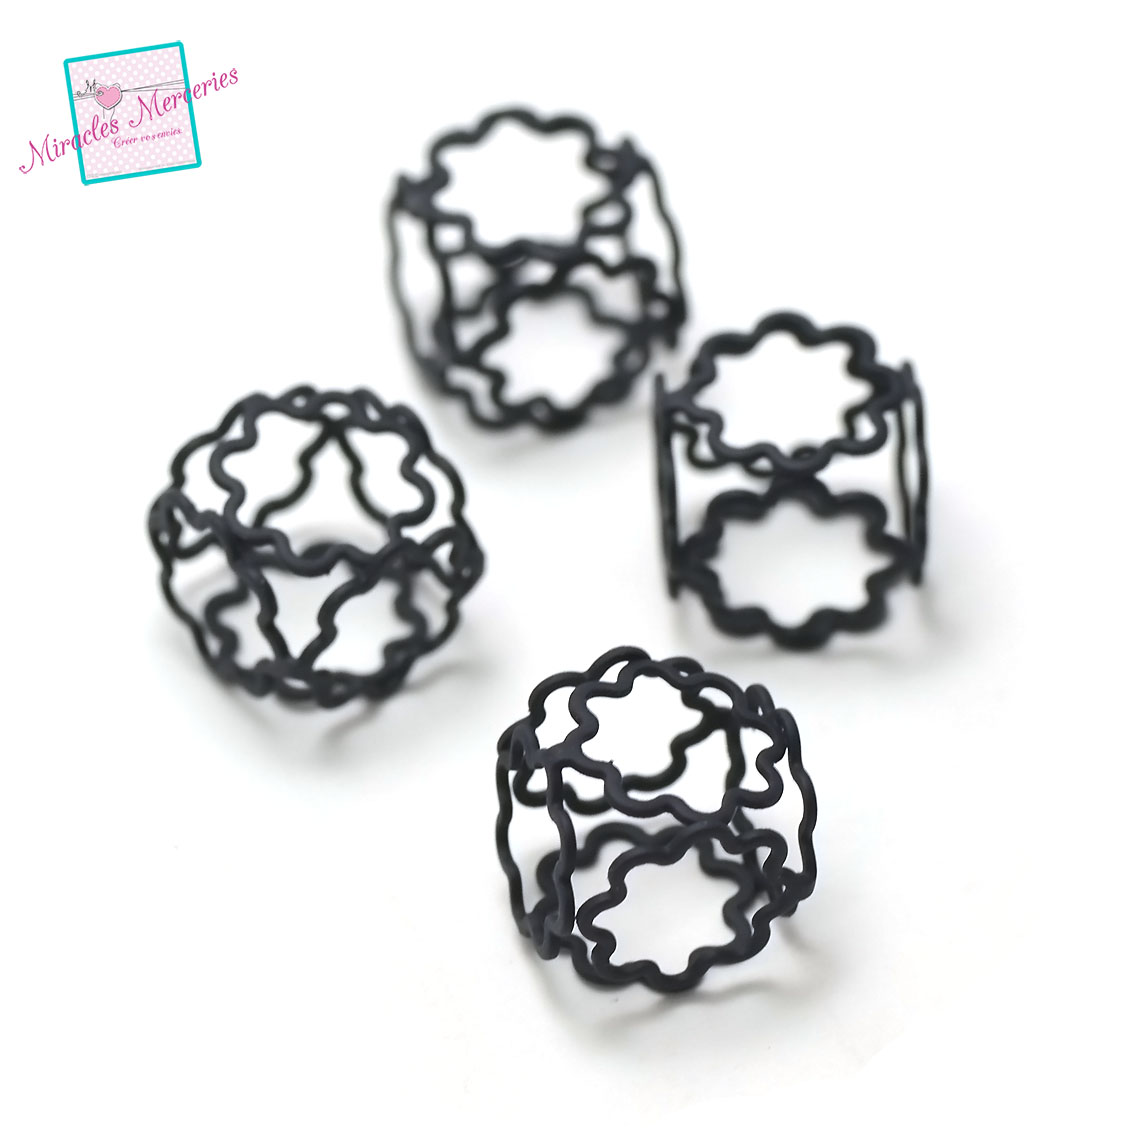 4 connecteurs /perles 3D cube fleuri 16x16 mm,noir